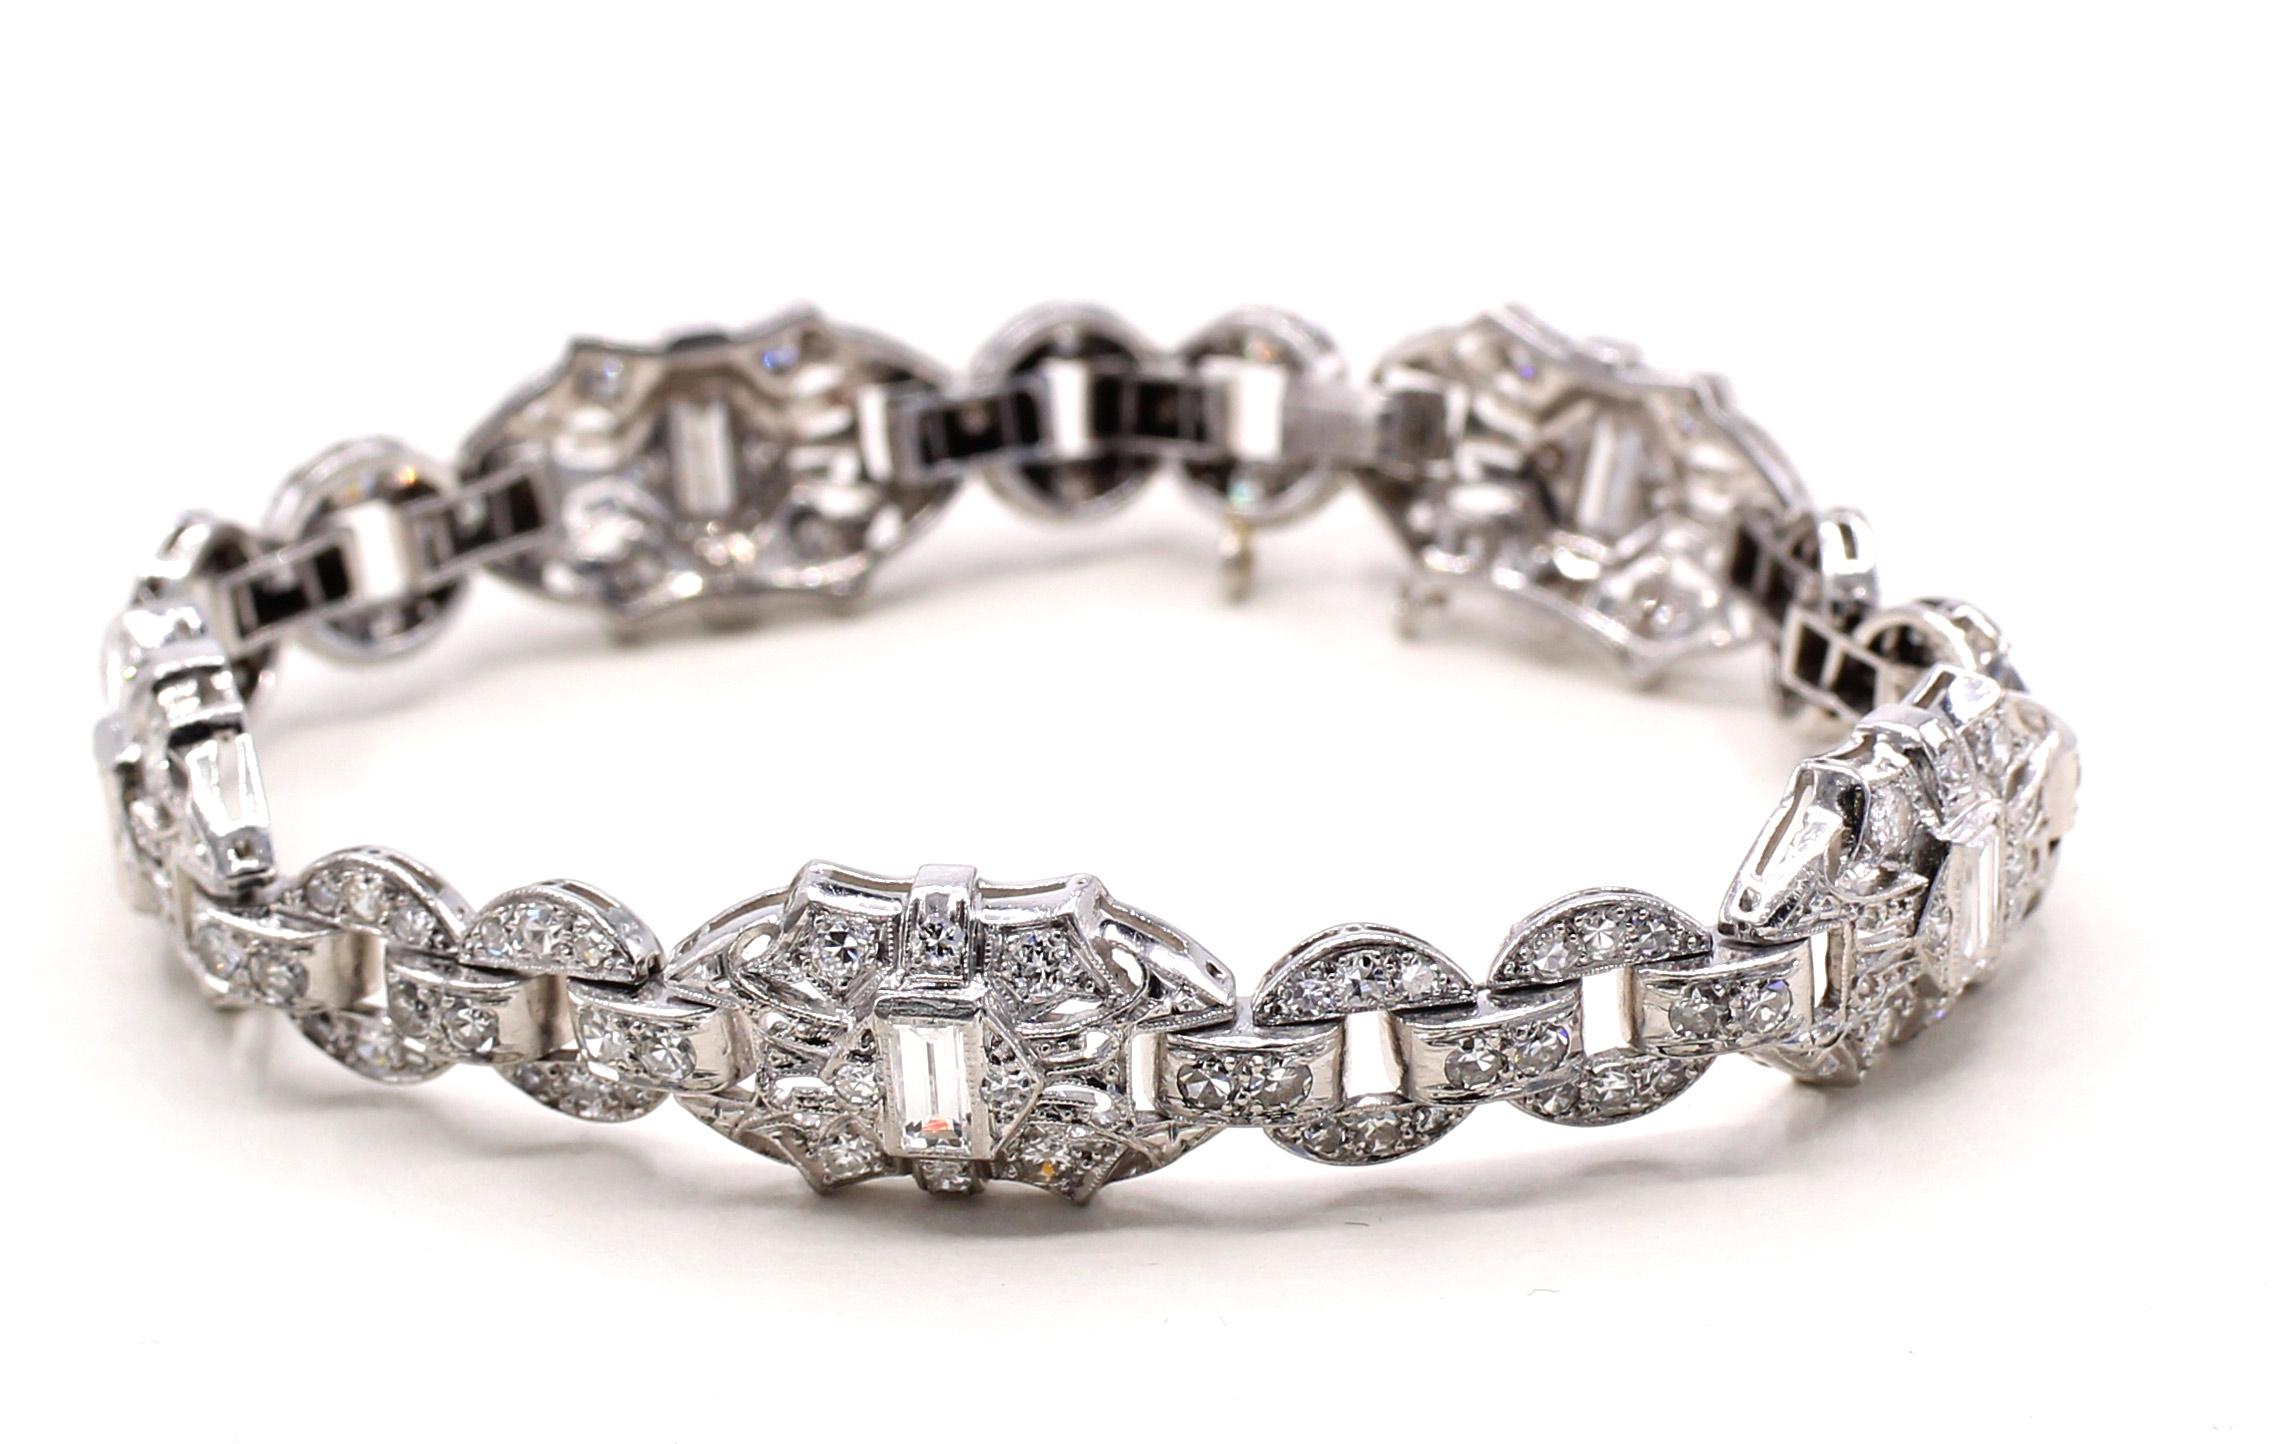 Bracelet Art déco datant de 1935 environ, fabriqué à la main en platine et serti de diamants ronds de taille ancienne et de diamants baguettes. Design géométrique avec des liens flexibles, 6.65 pouces de long.